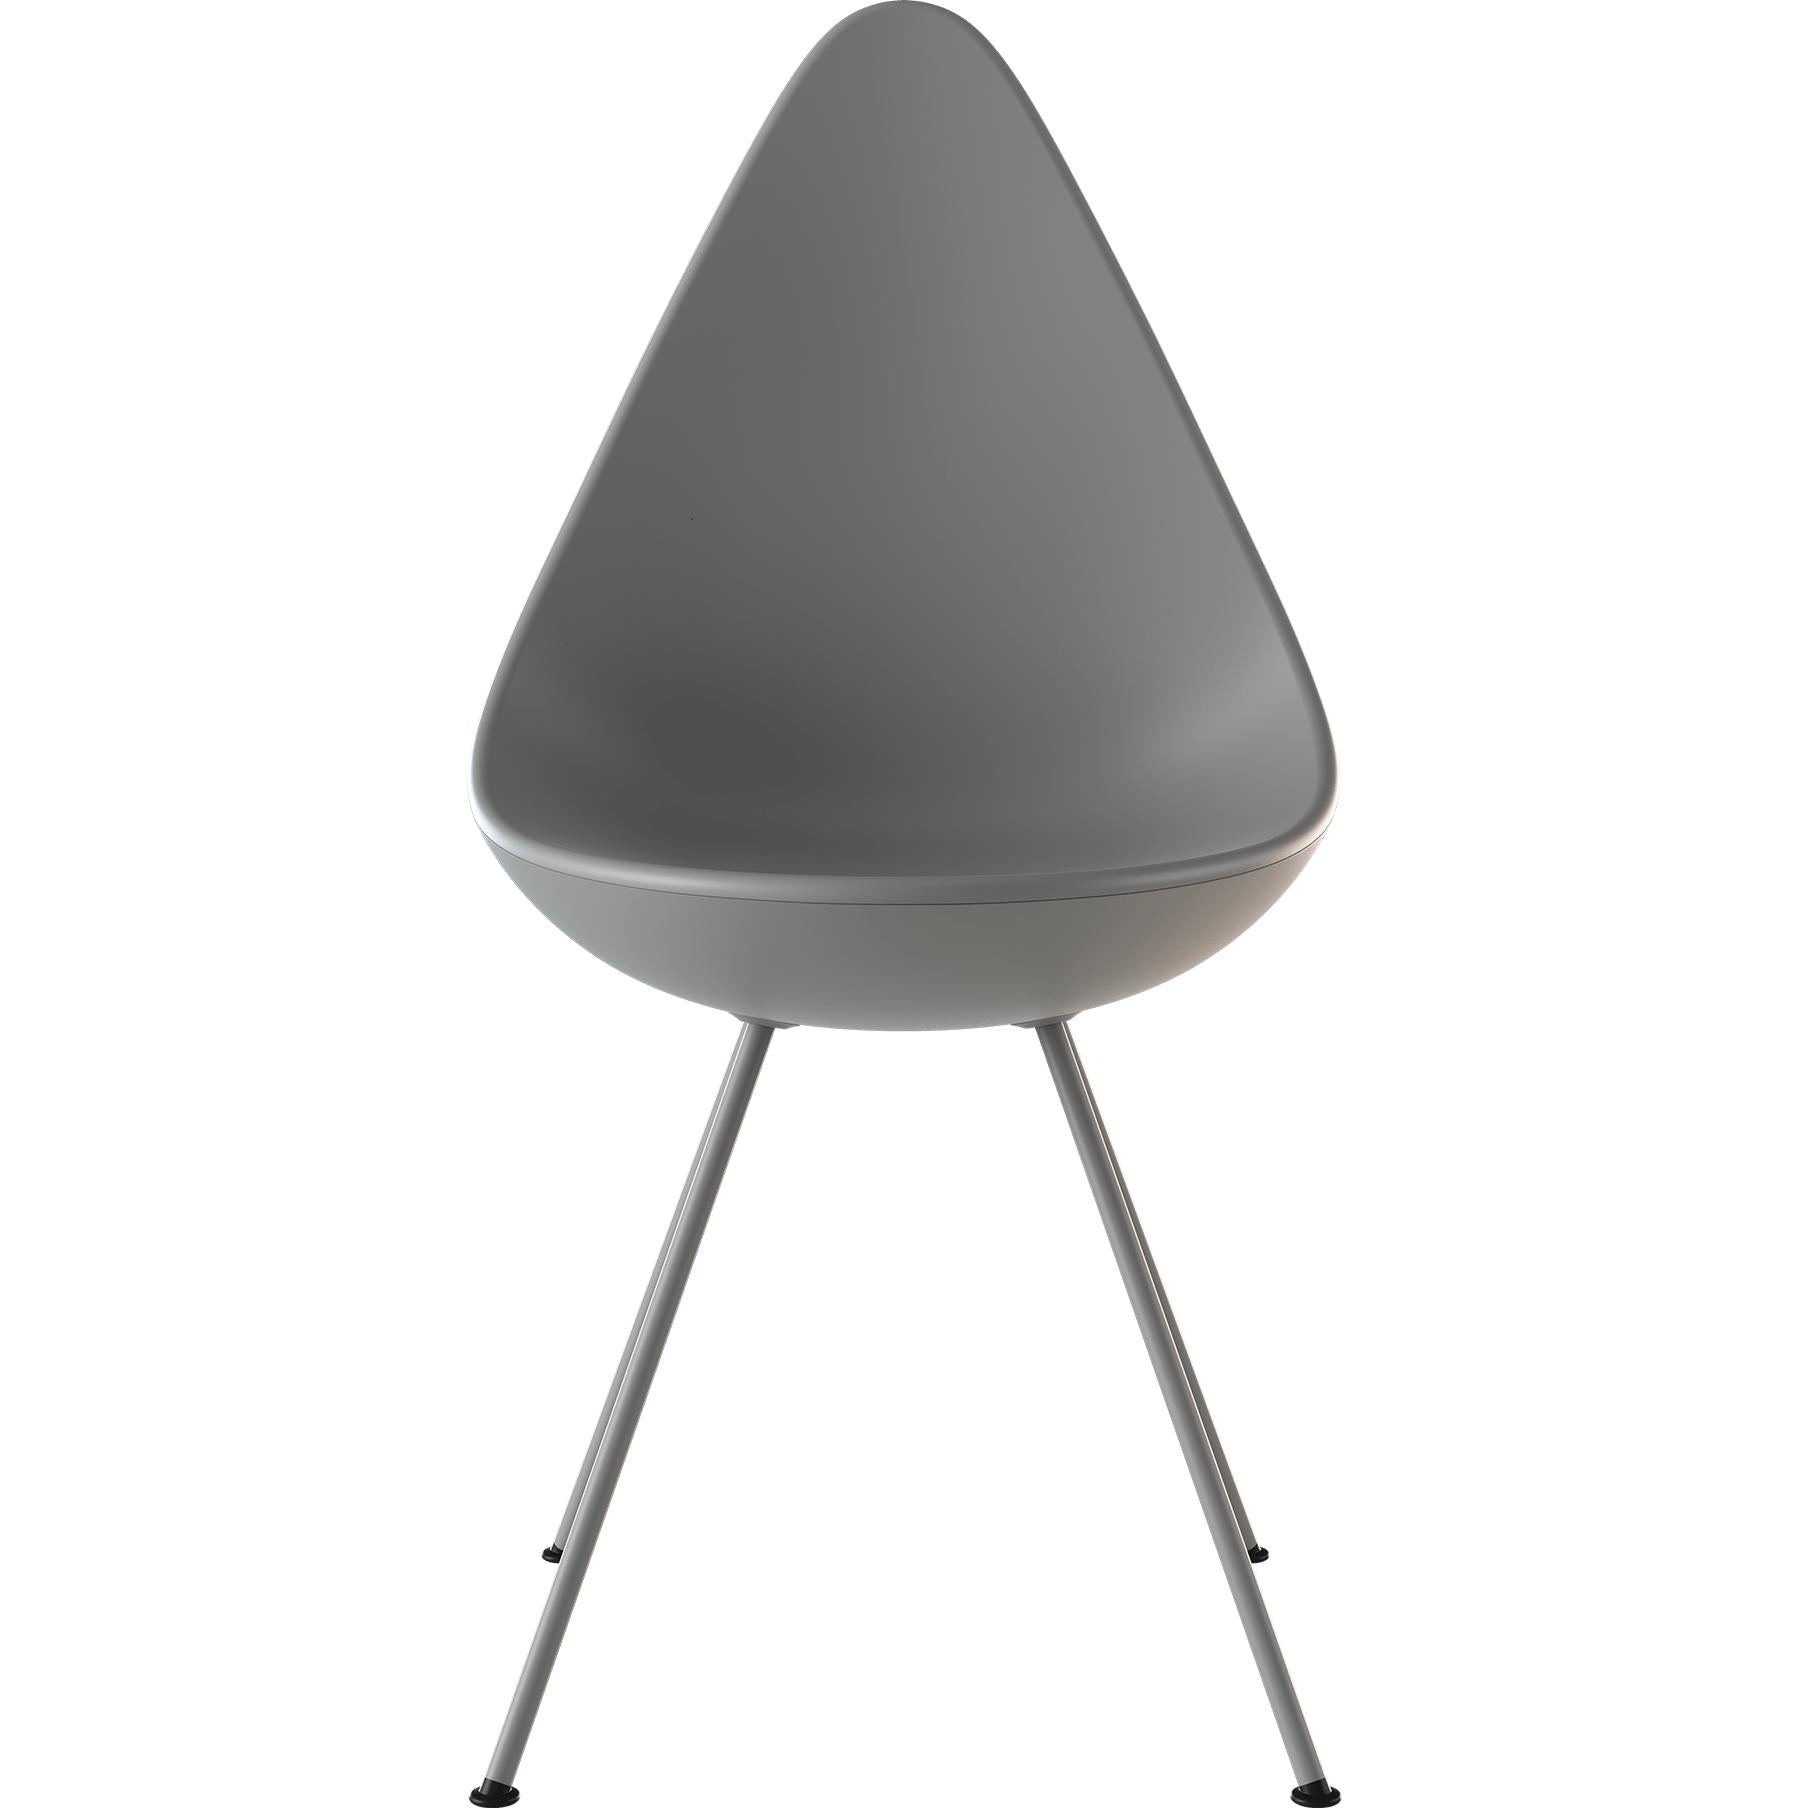 Fritz Hansen Le chaise de chaise monochrome en plastique, neuf gris